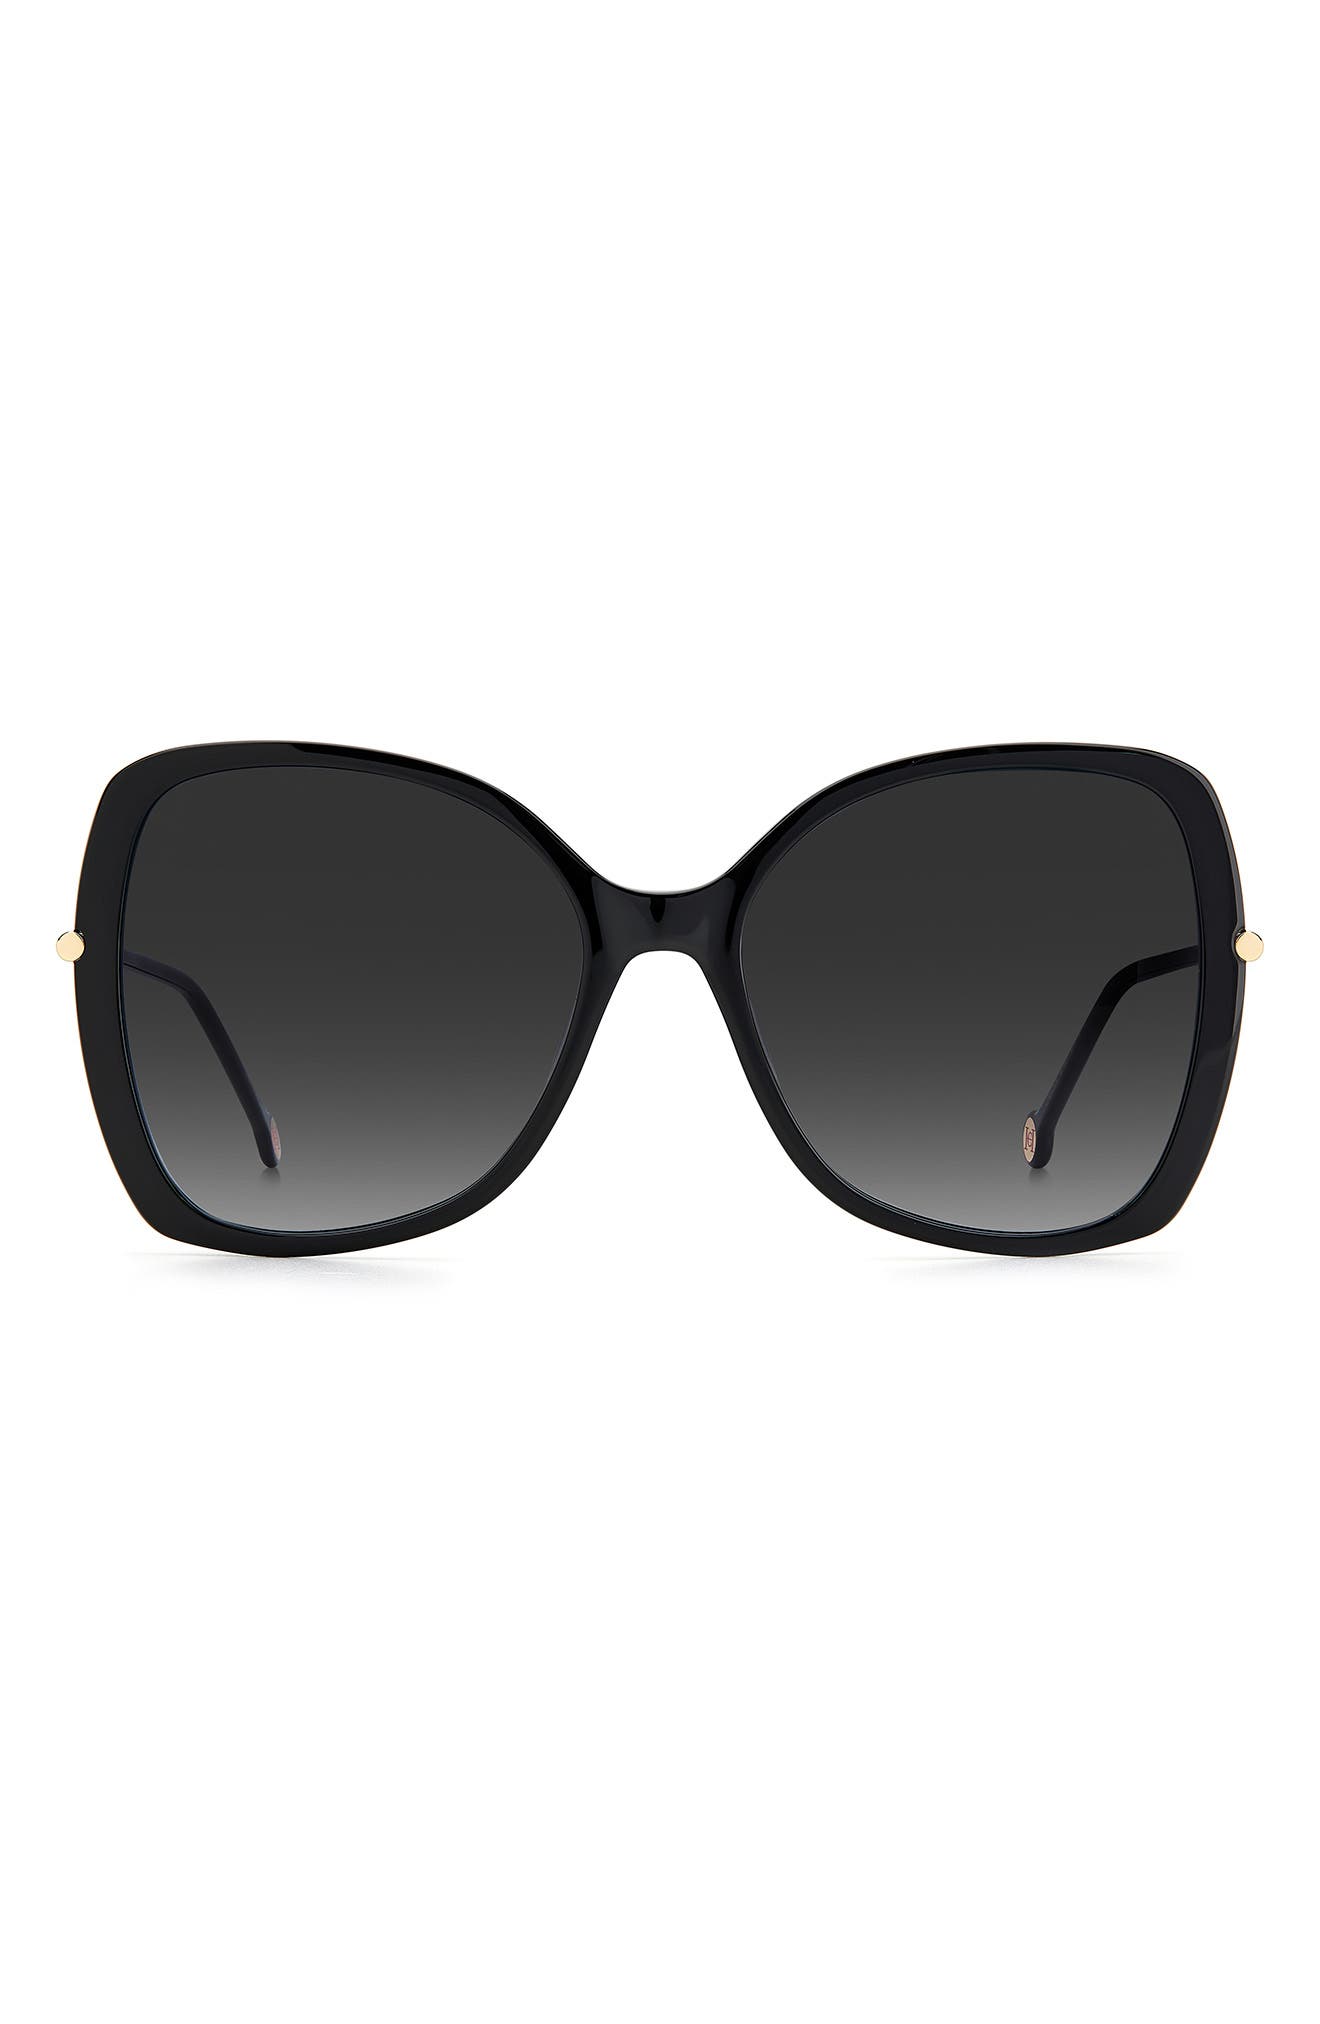 Womens Accessories Sunglasses Carolina Herrera Olive Sunglasses Save 45% 